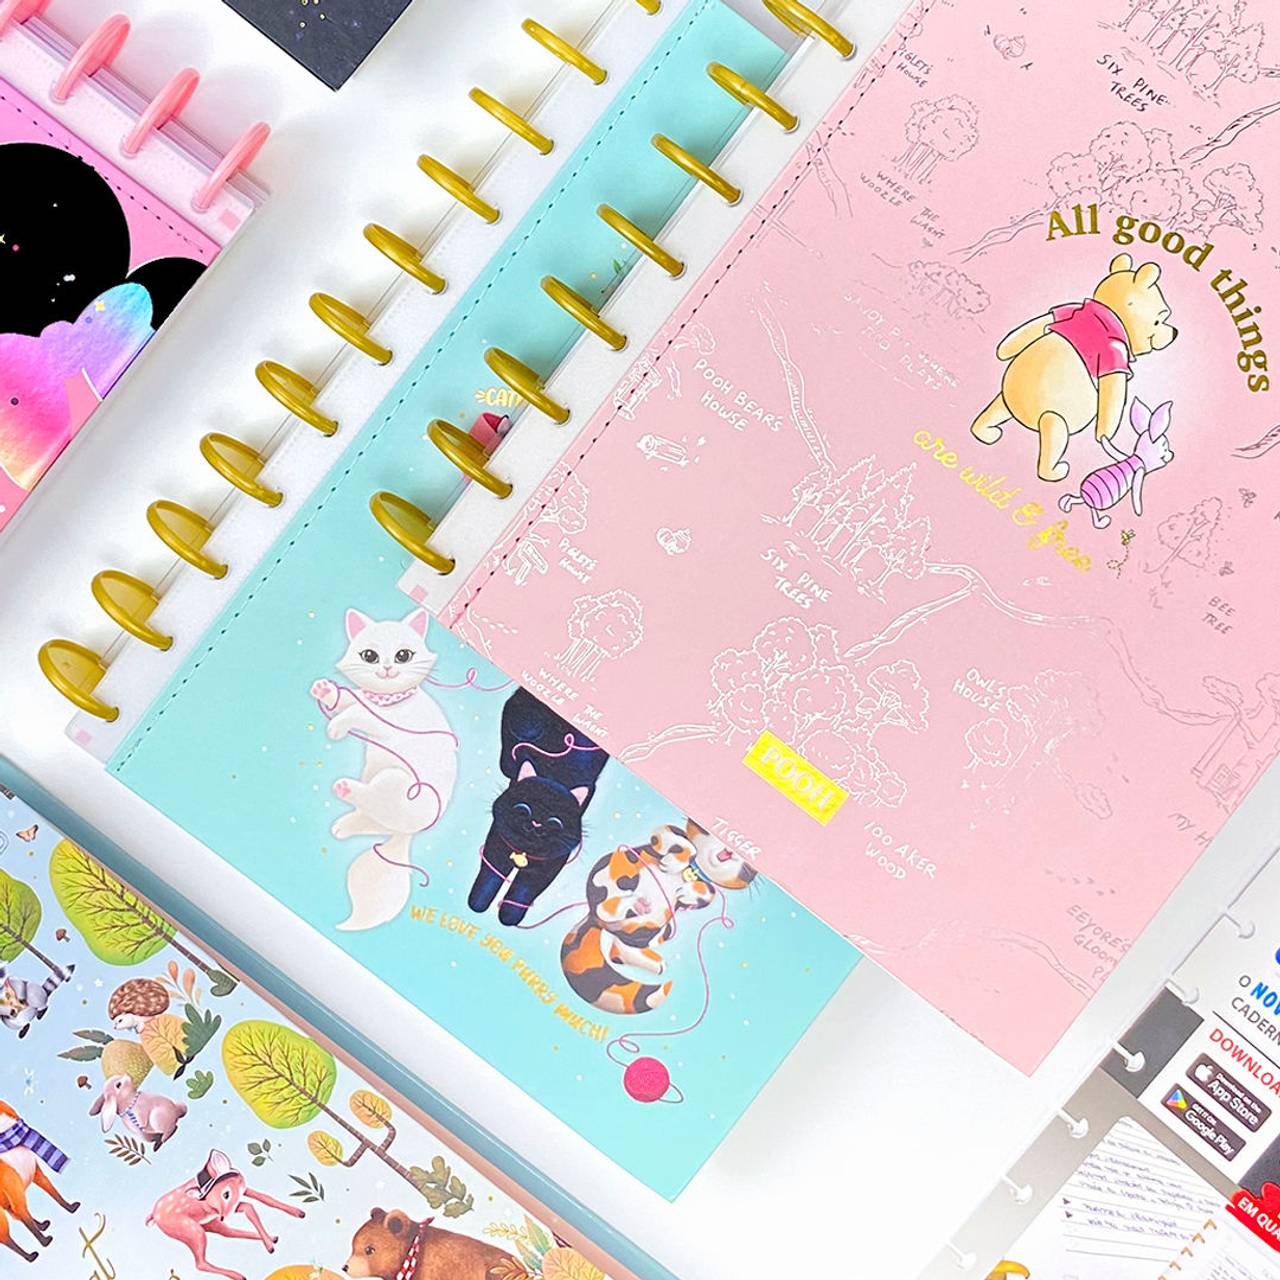 Caderno Tilidisco Connect com capas variadas dos personagens da Disney, como Pooh e Minnie